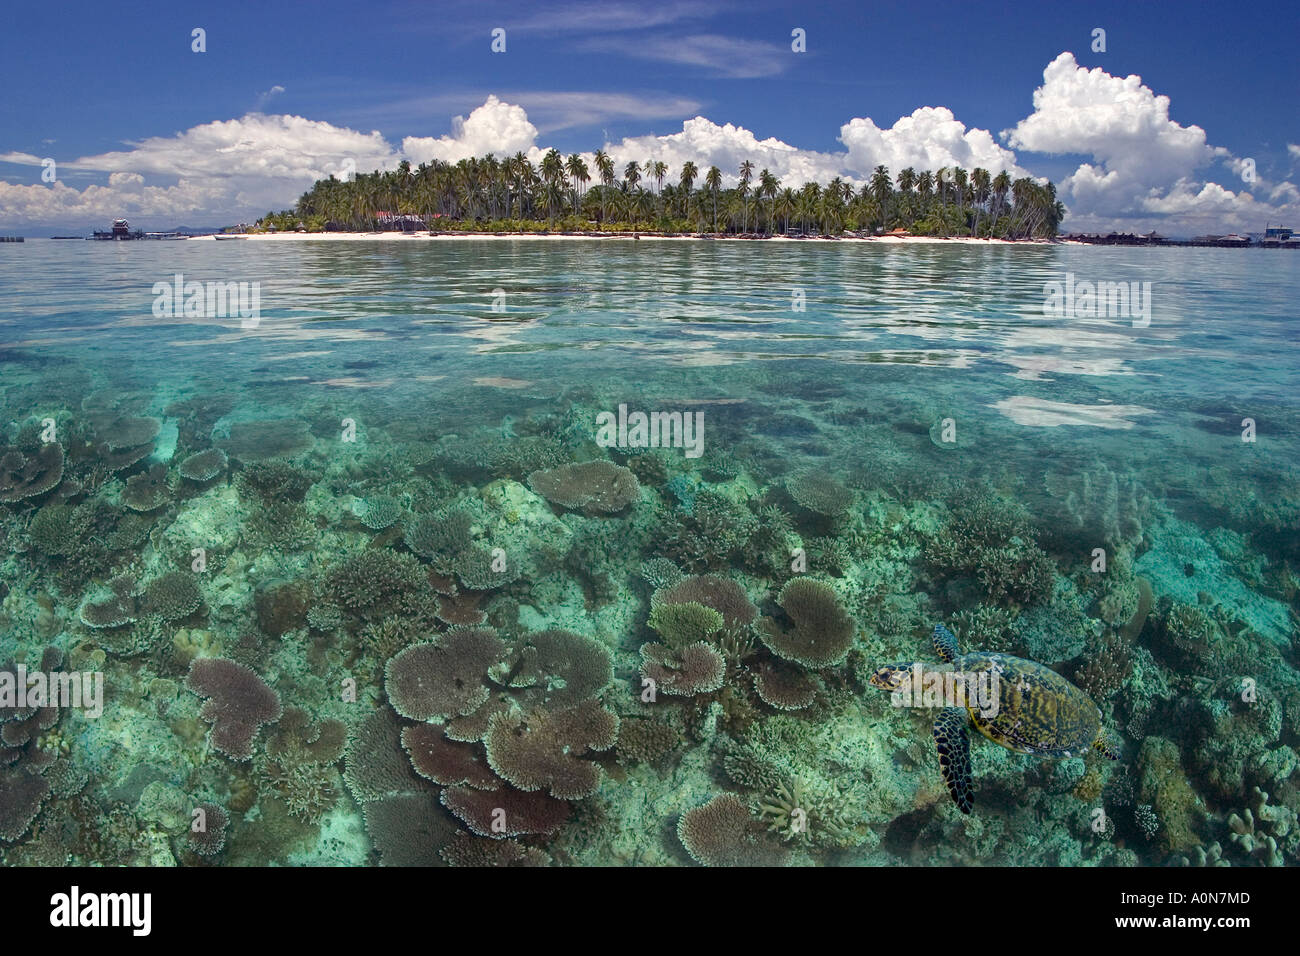 Questo composito digitale comprende una tartaruga embricata, Eretmochelys imbricata, e l'isola di Mabul, Malaysia. Foto Stock